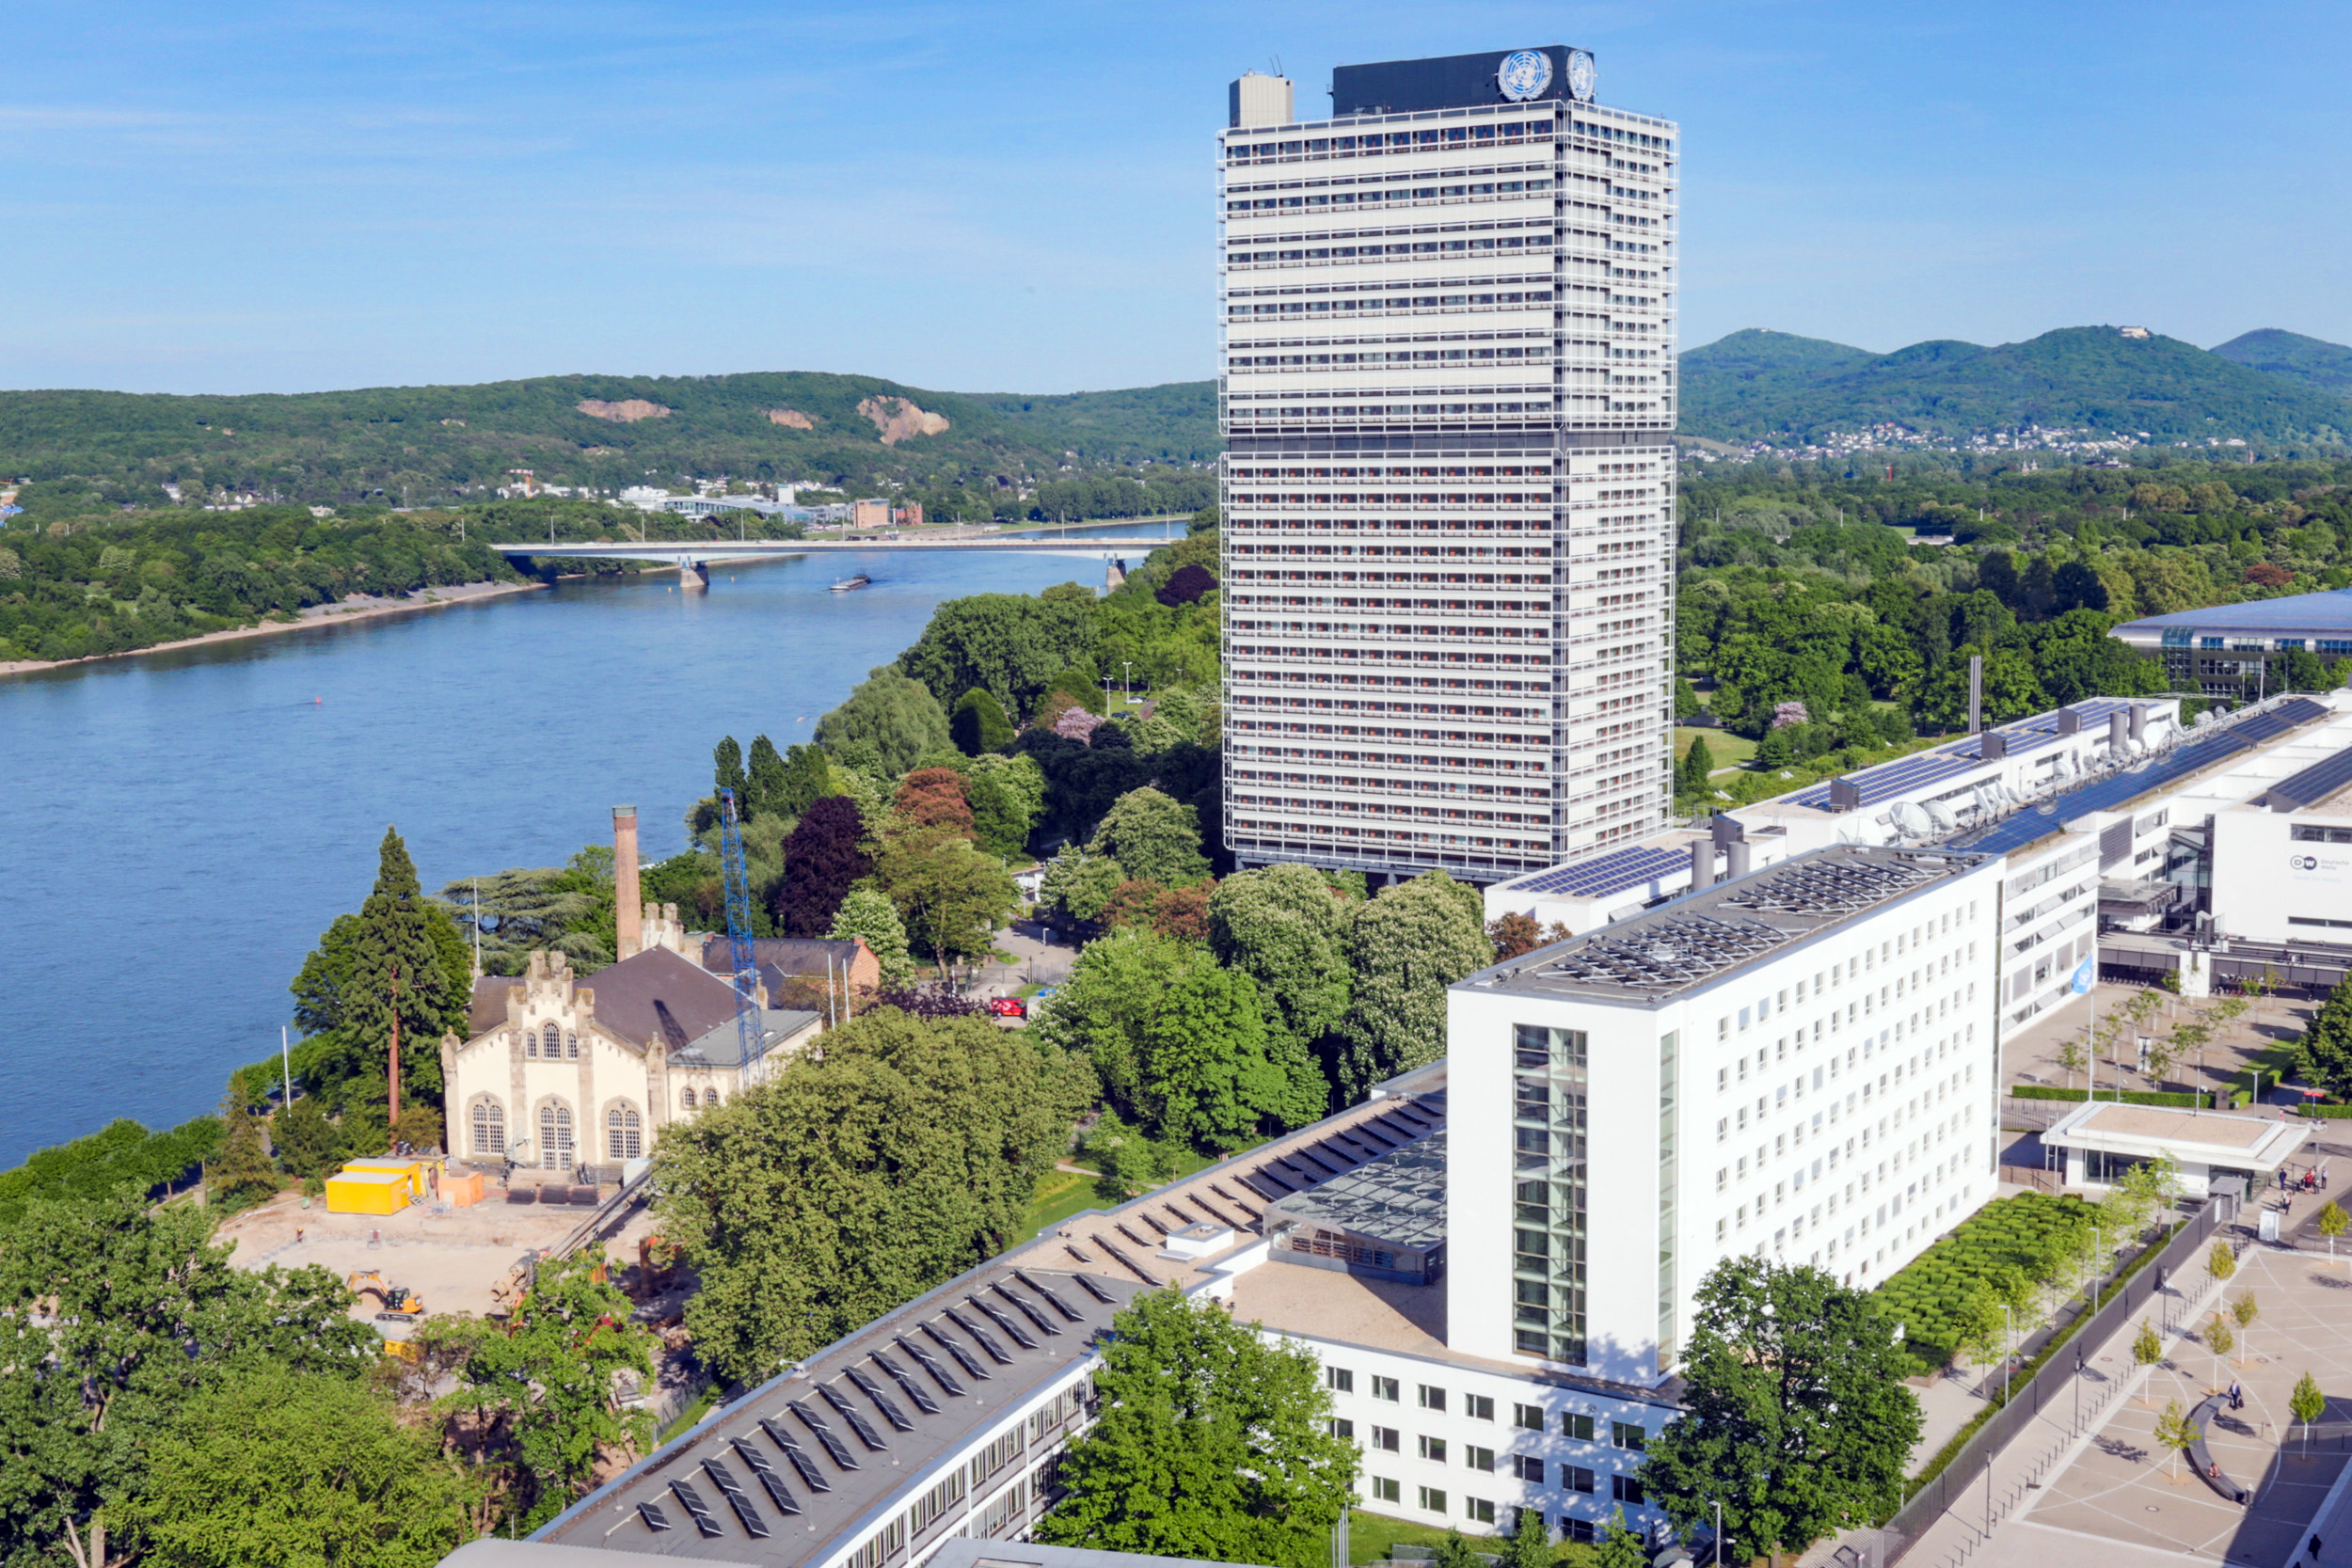 Blick auf den UN-Campus Bonn